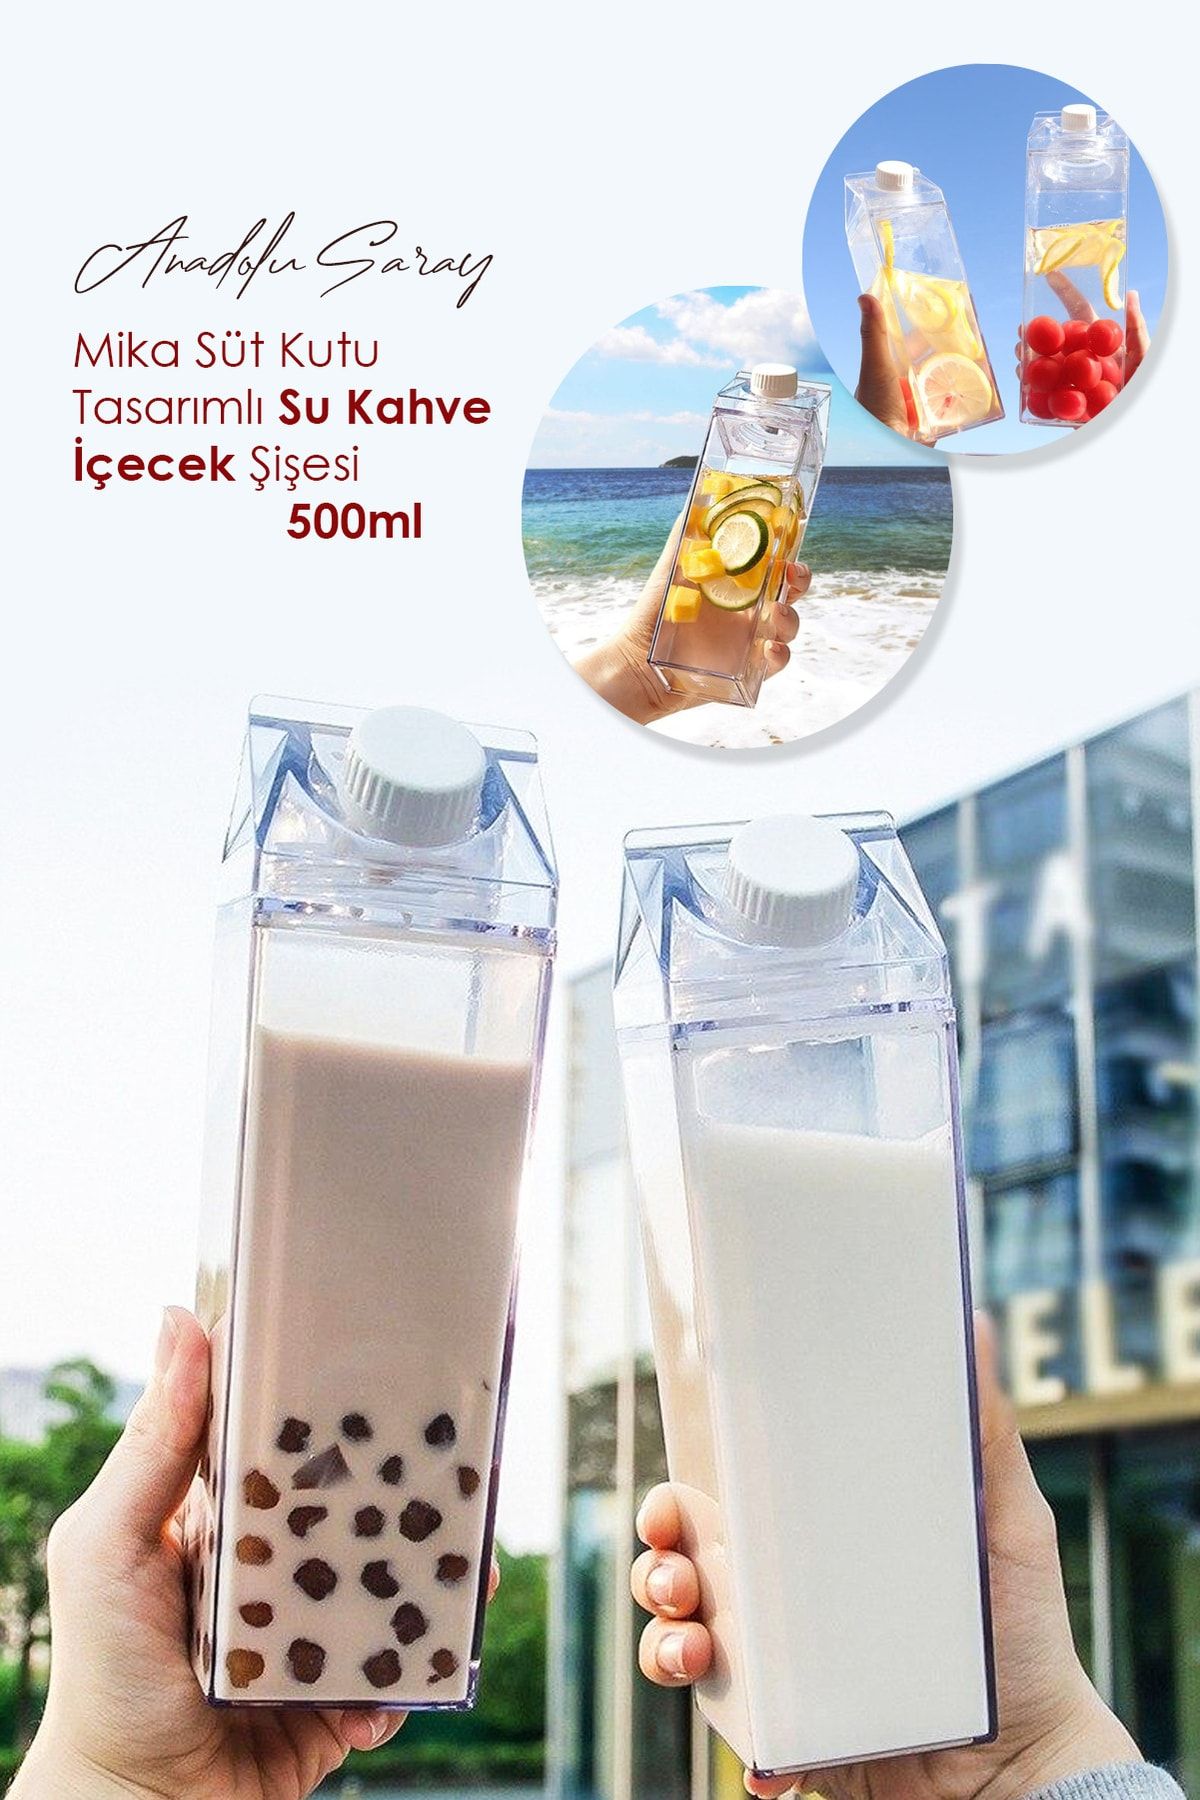 Anadolu Saray Çarşısı 500ml Mika Süt Kutu Tasarımlı Su Kahve Içecek Şişesi | Cam Değildir | Kahve Ve Sunum Bardağı -1 Adet